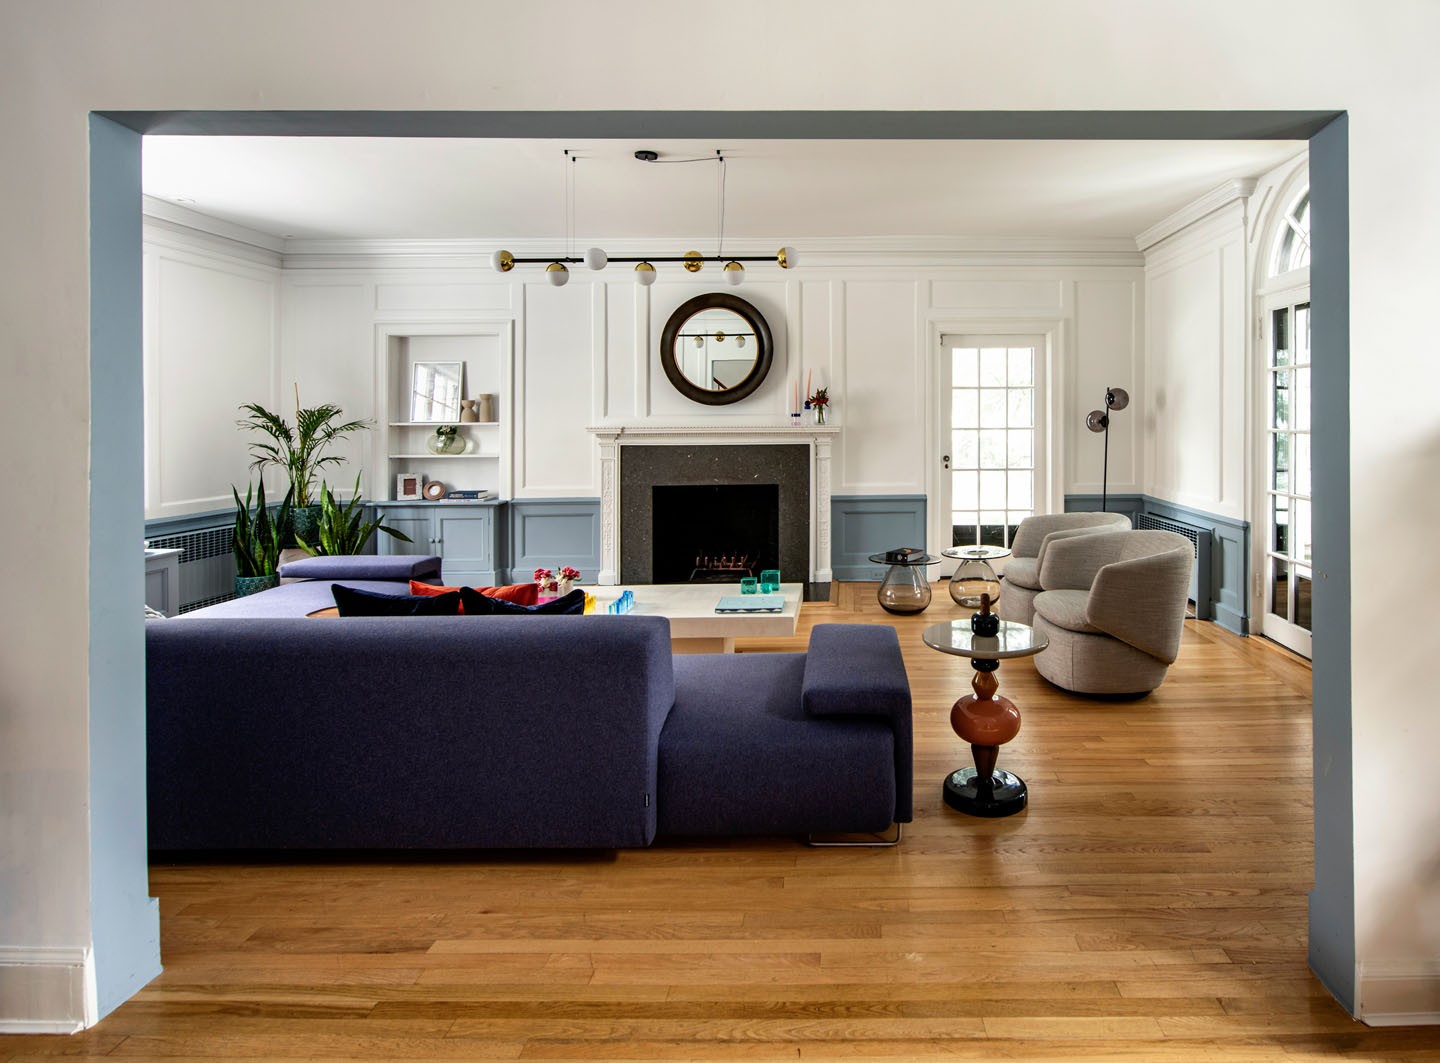 Décor do dia: sala de estar clássica com design contemporâneo (Foto: Romulo Fialdini)